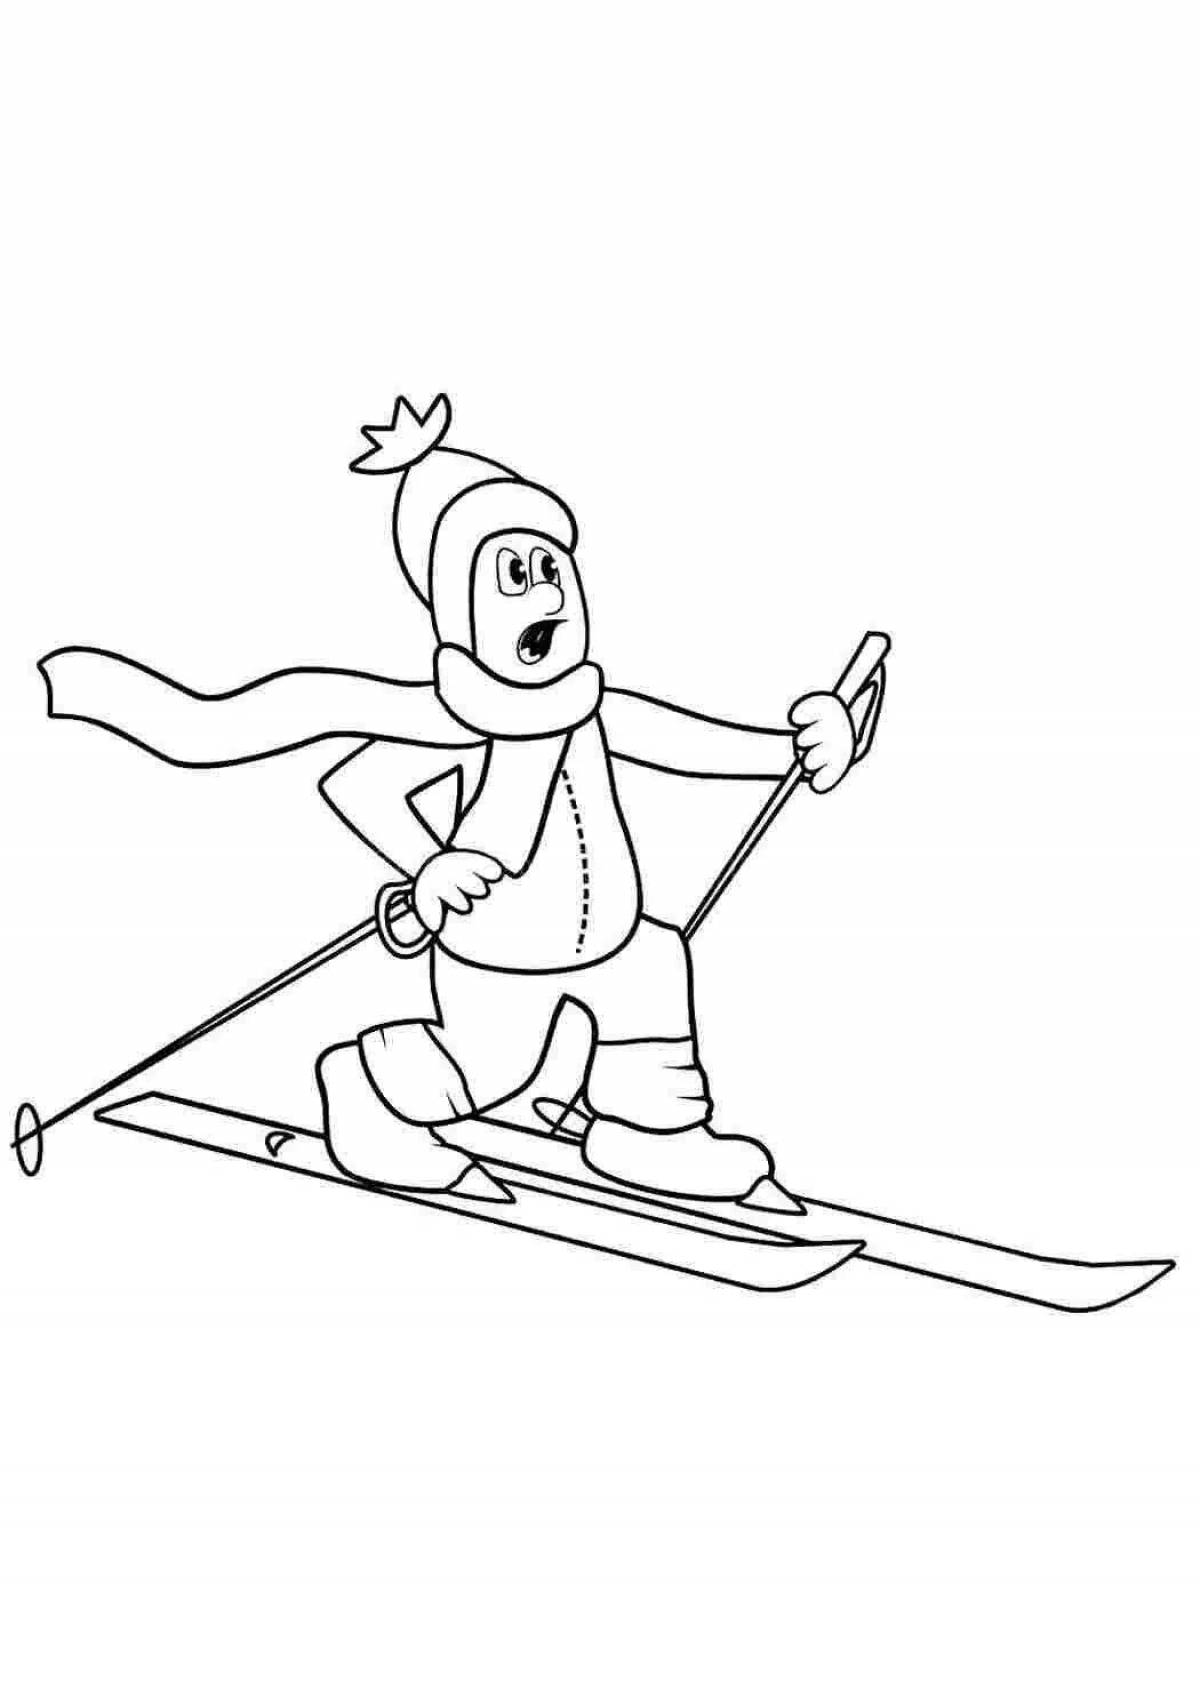 Impact skis for children